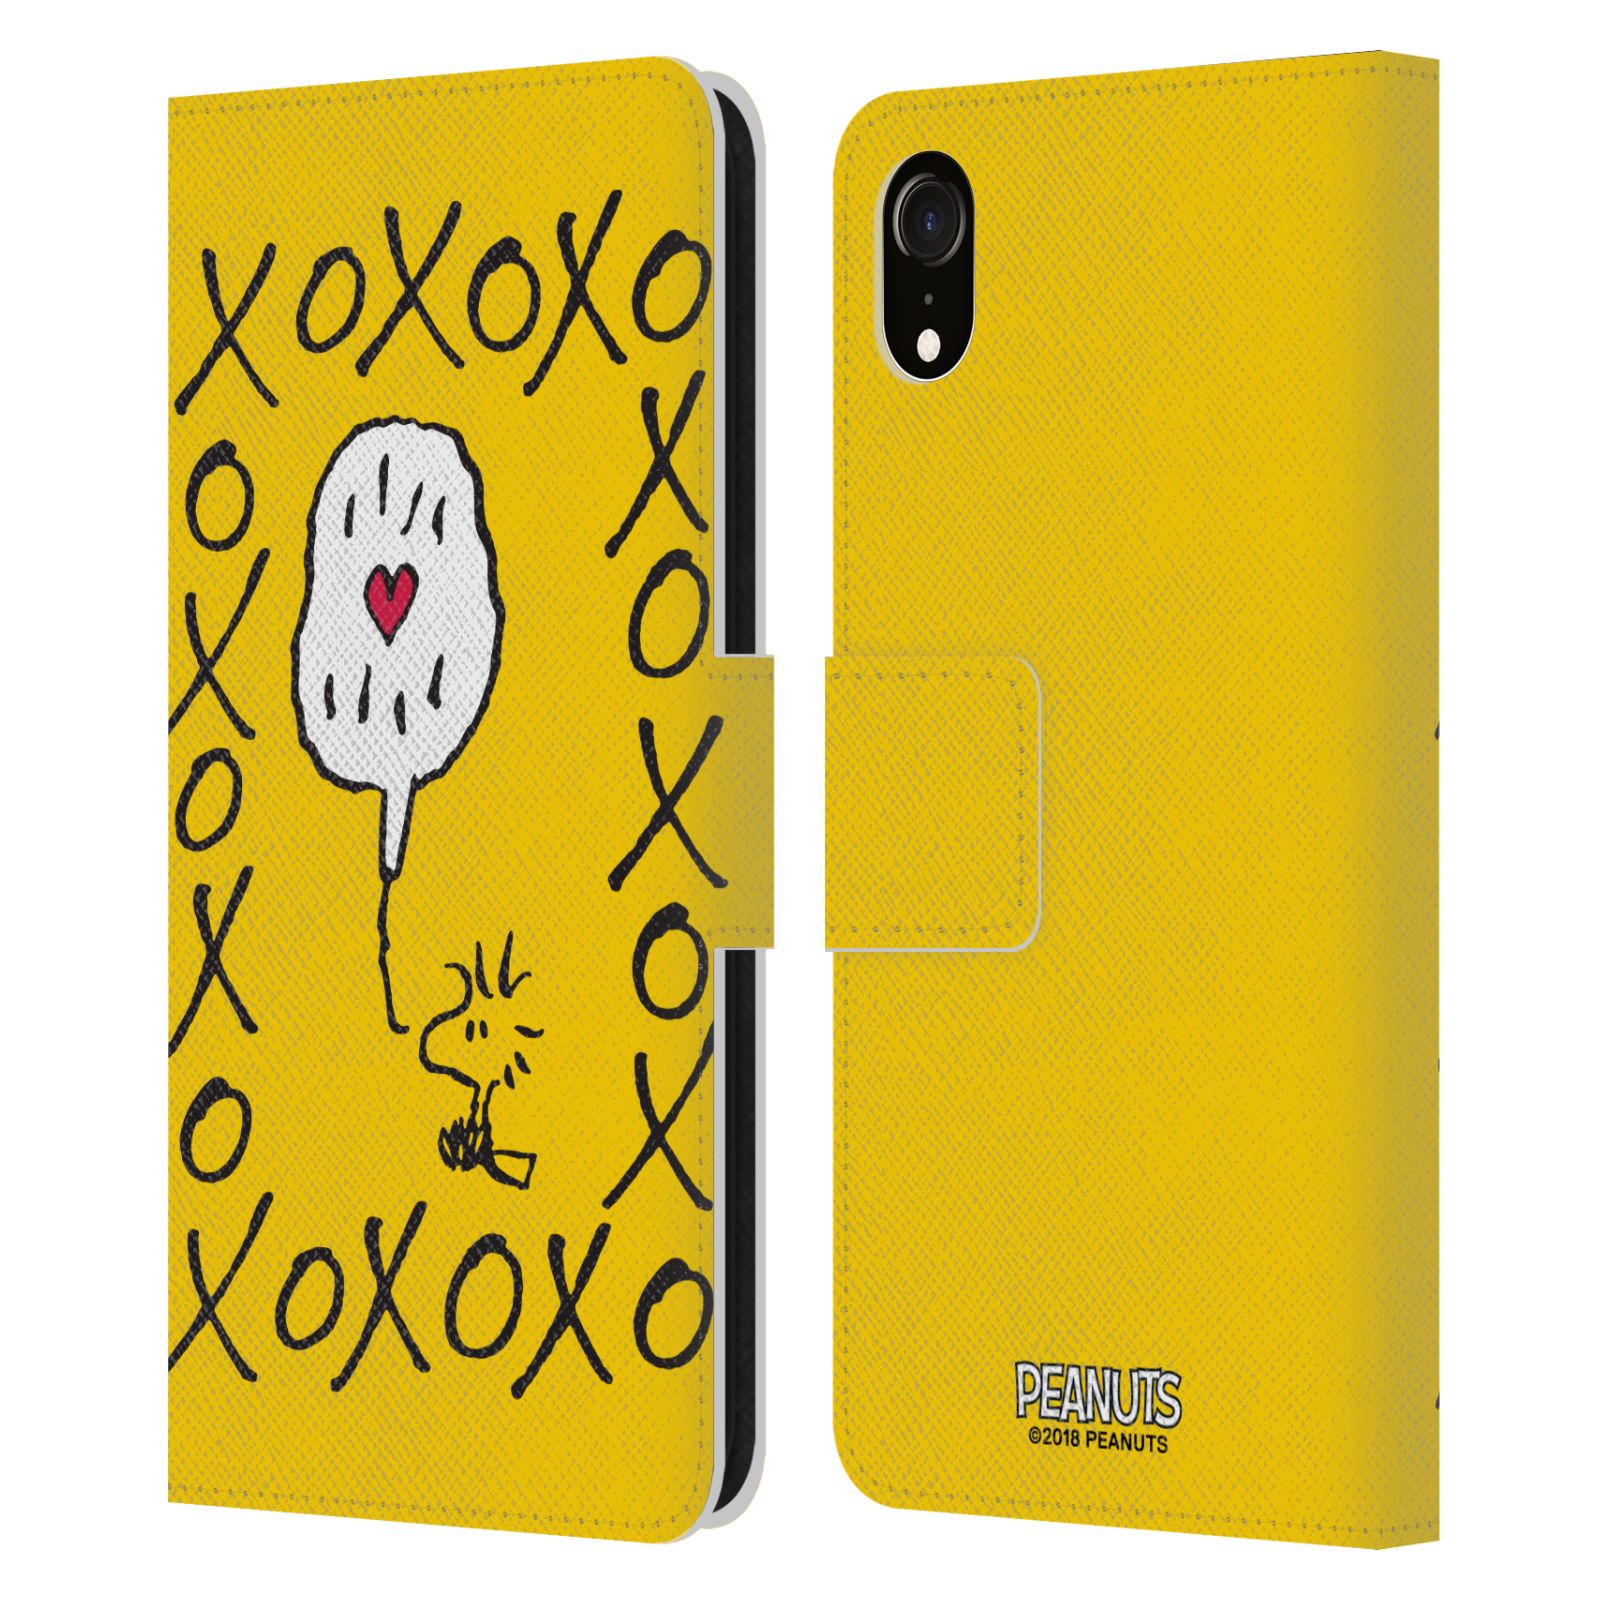 Pouzdro na mobil Apple Iphone XR - Head Case - Peanuts - Woodstock ptáček XOXO